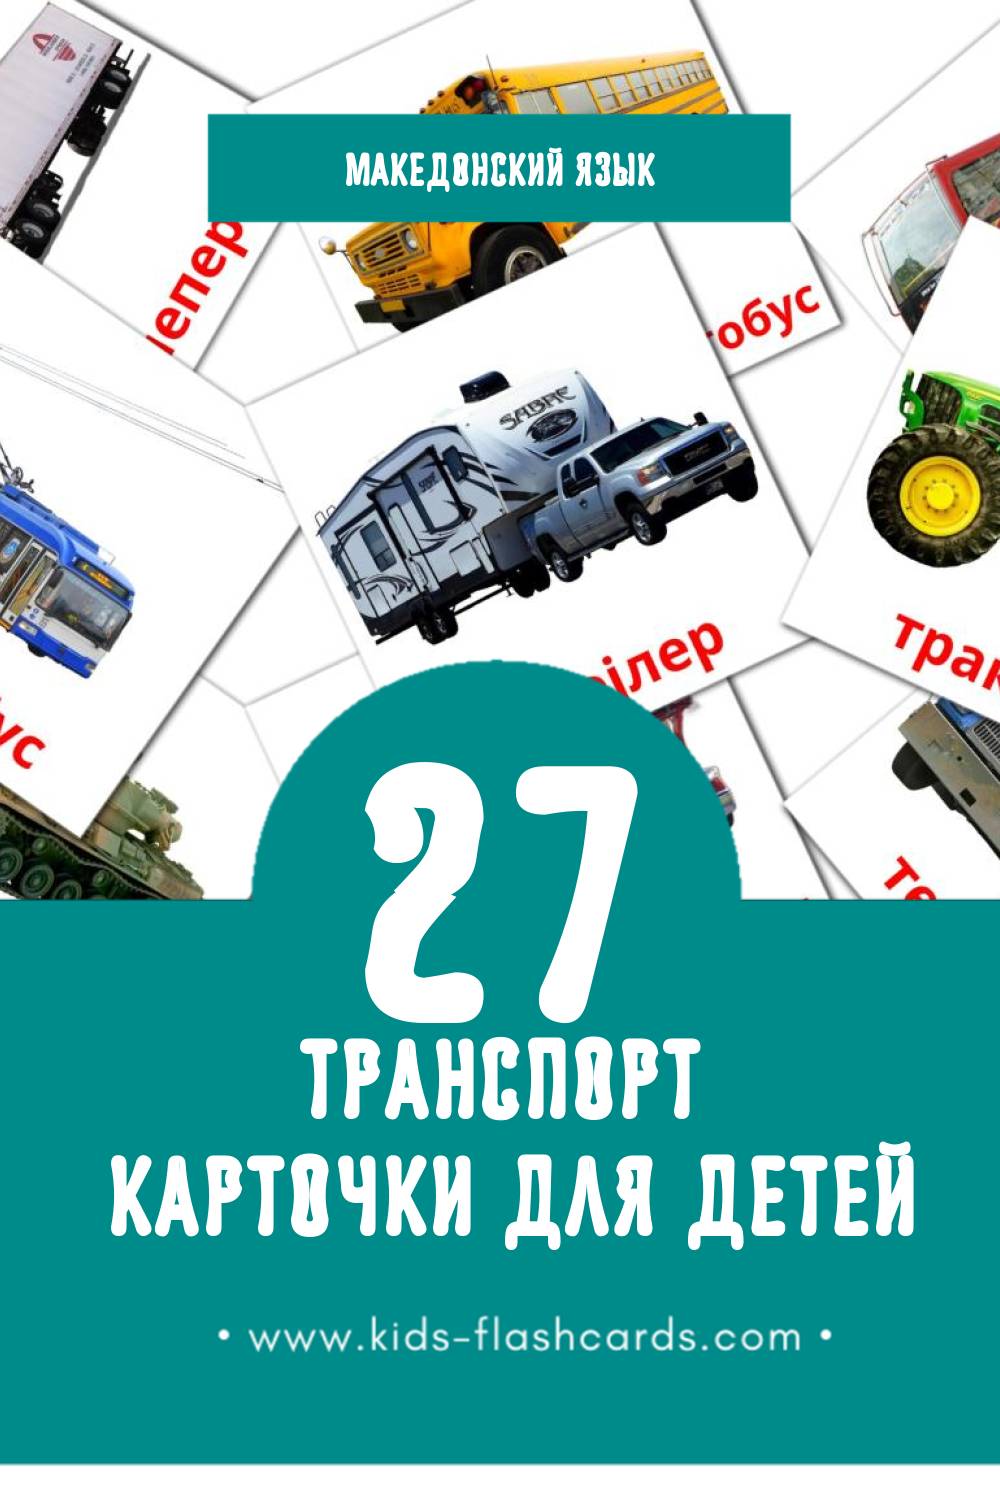 "Транспорт" - Визуальный Македонском Словарь для Малышей (41 картинок)